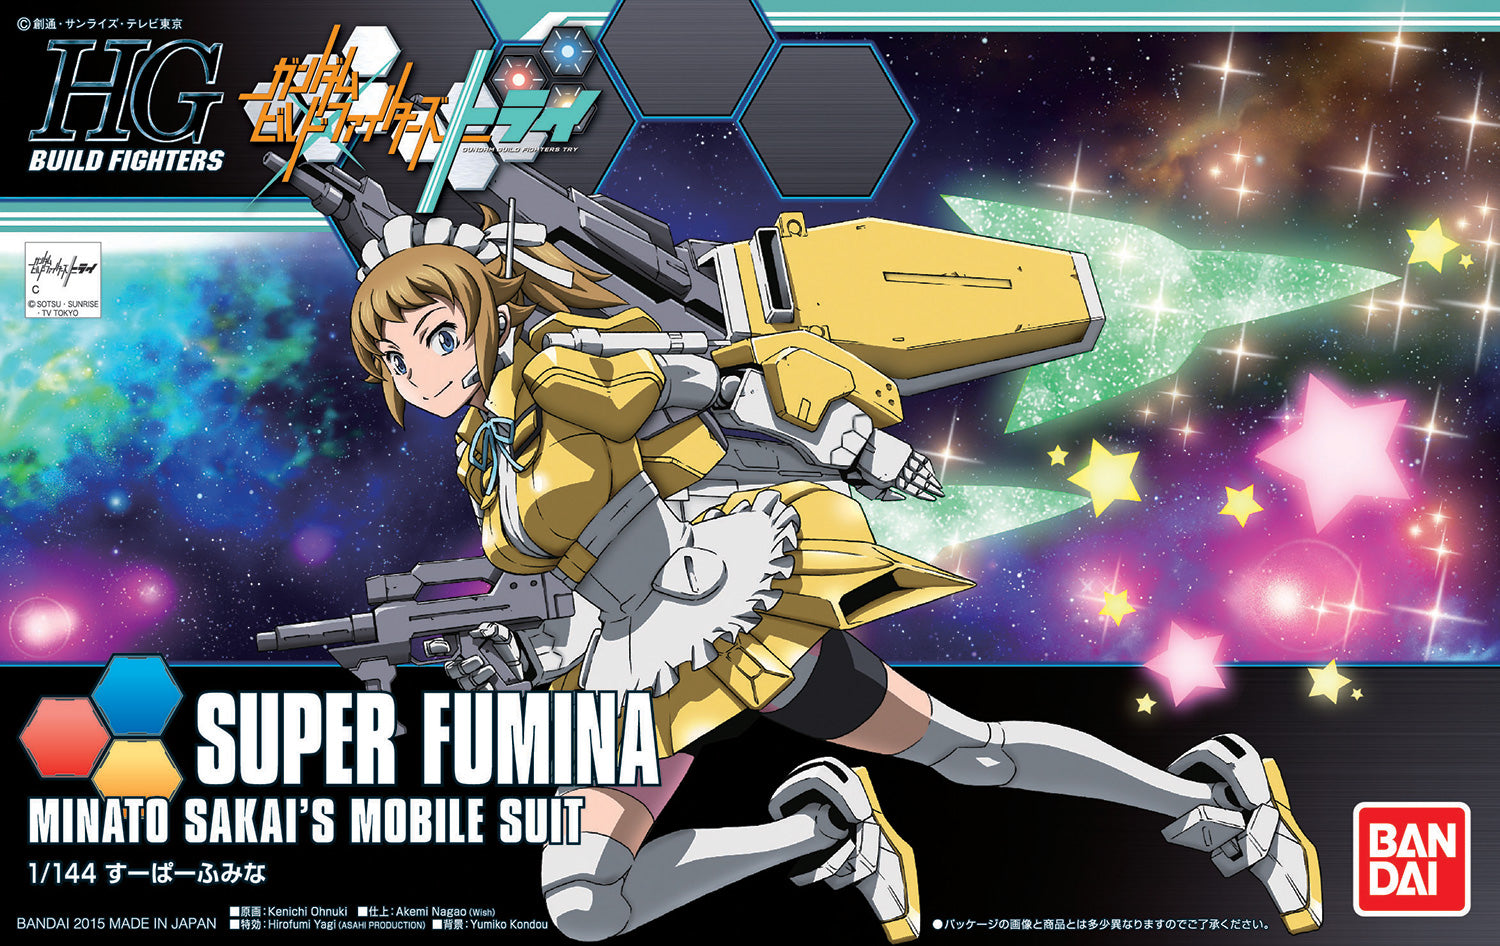 HGBF - SF-01 Super Fumina